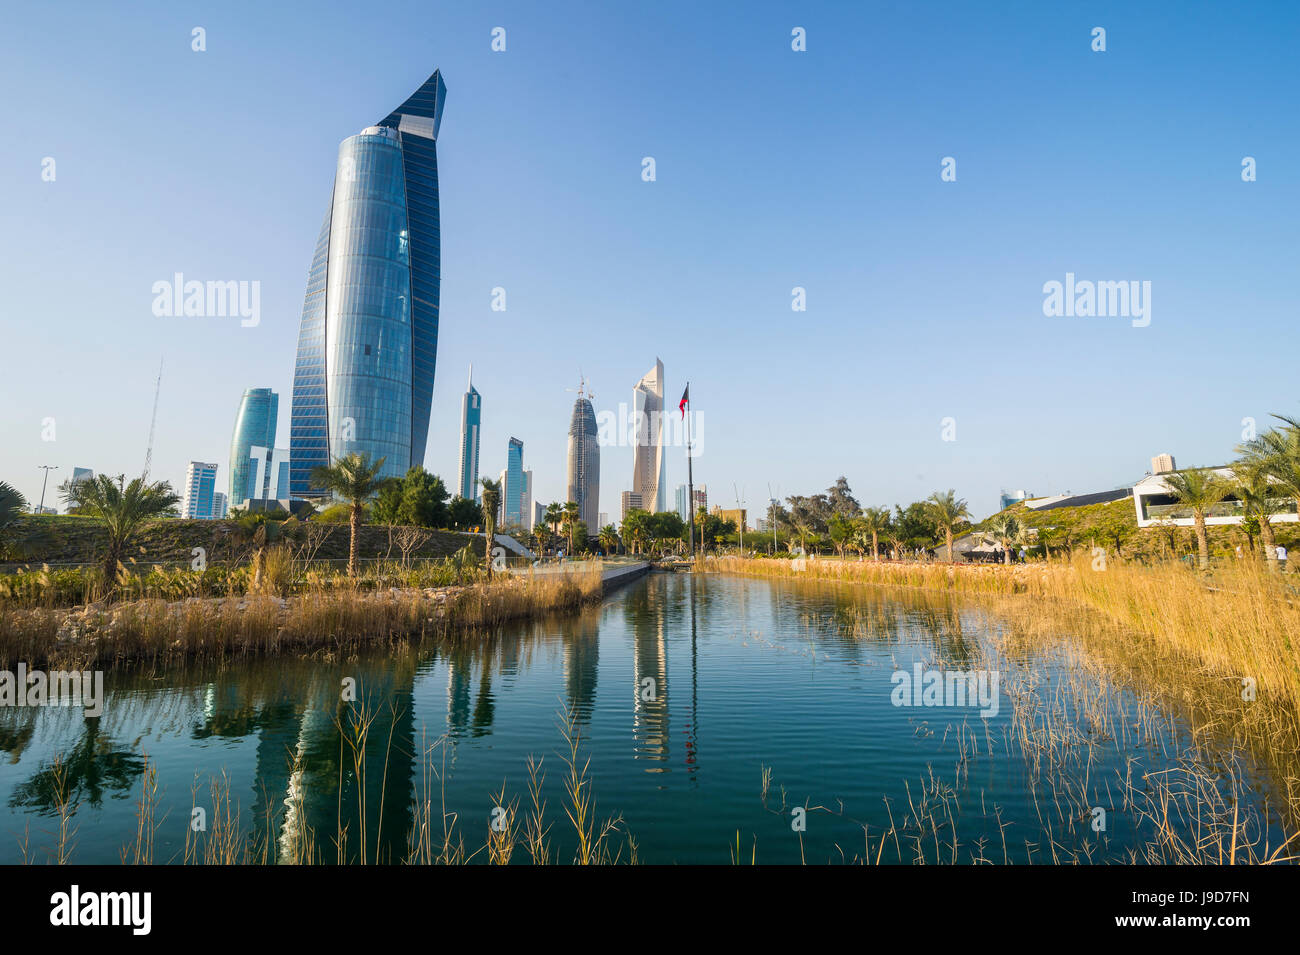 Al Hamra tower et le parc Al Shaheed, Koweït City, Koweït, Moyen-Orient Banque D'Images